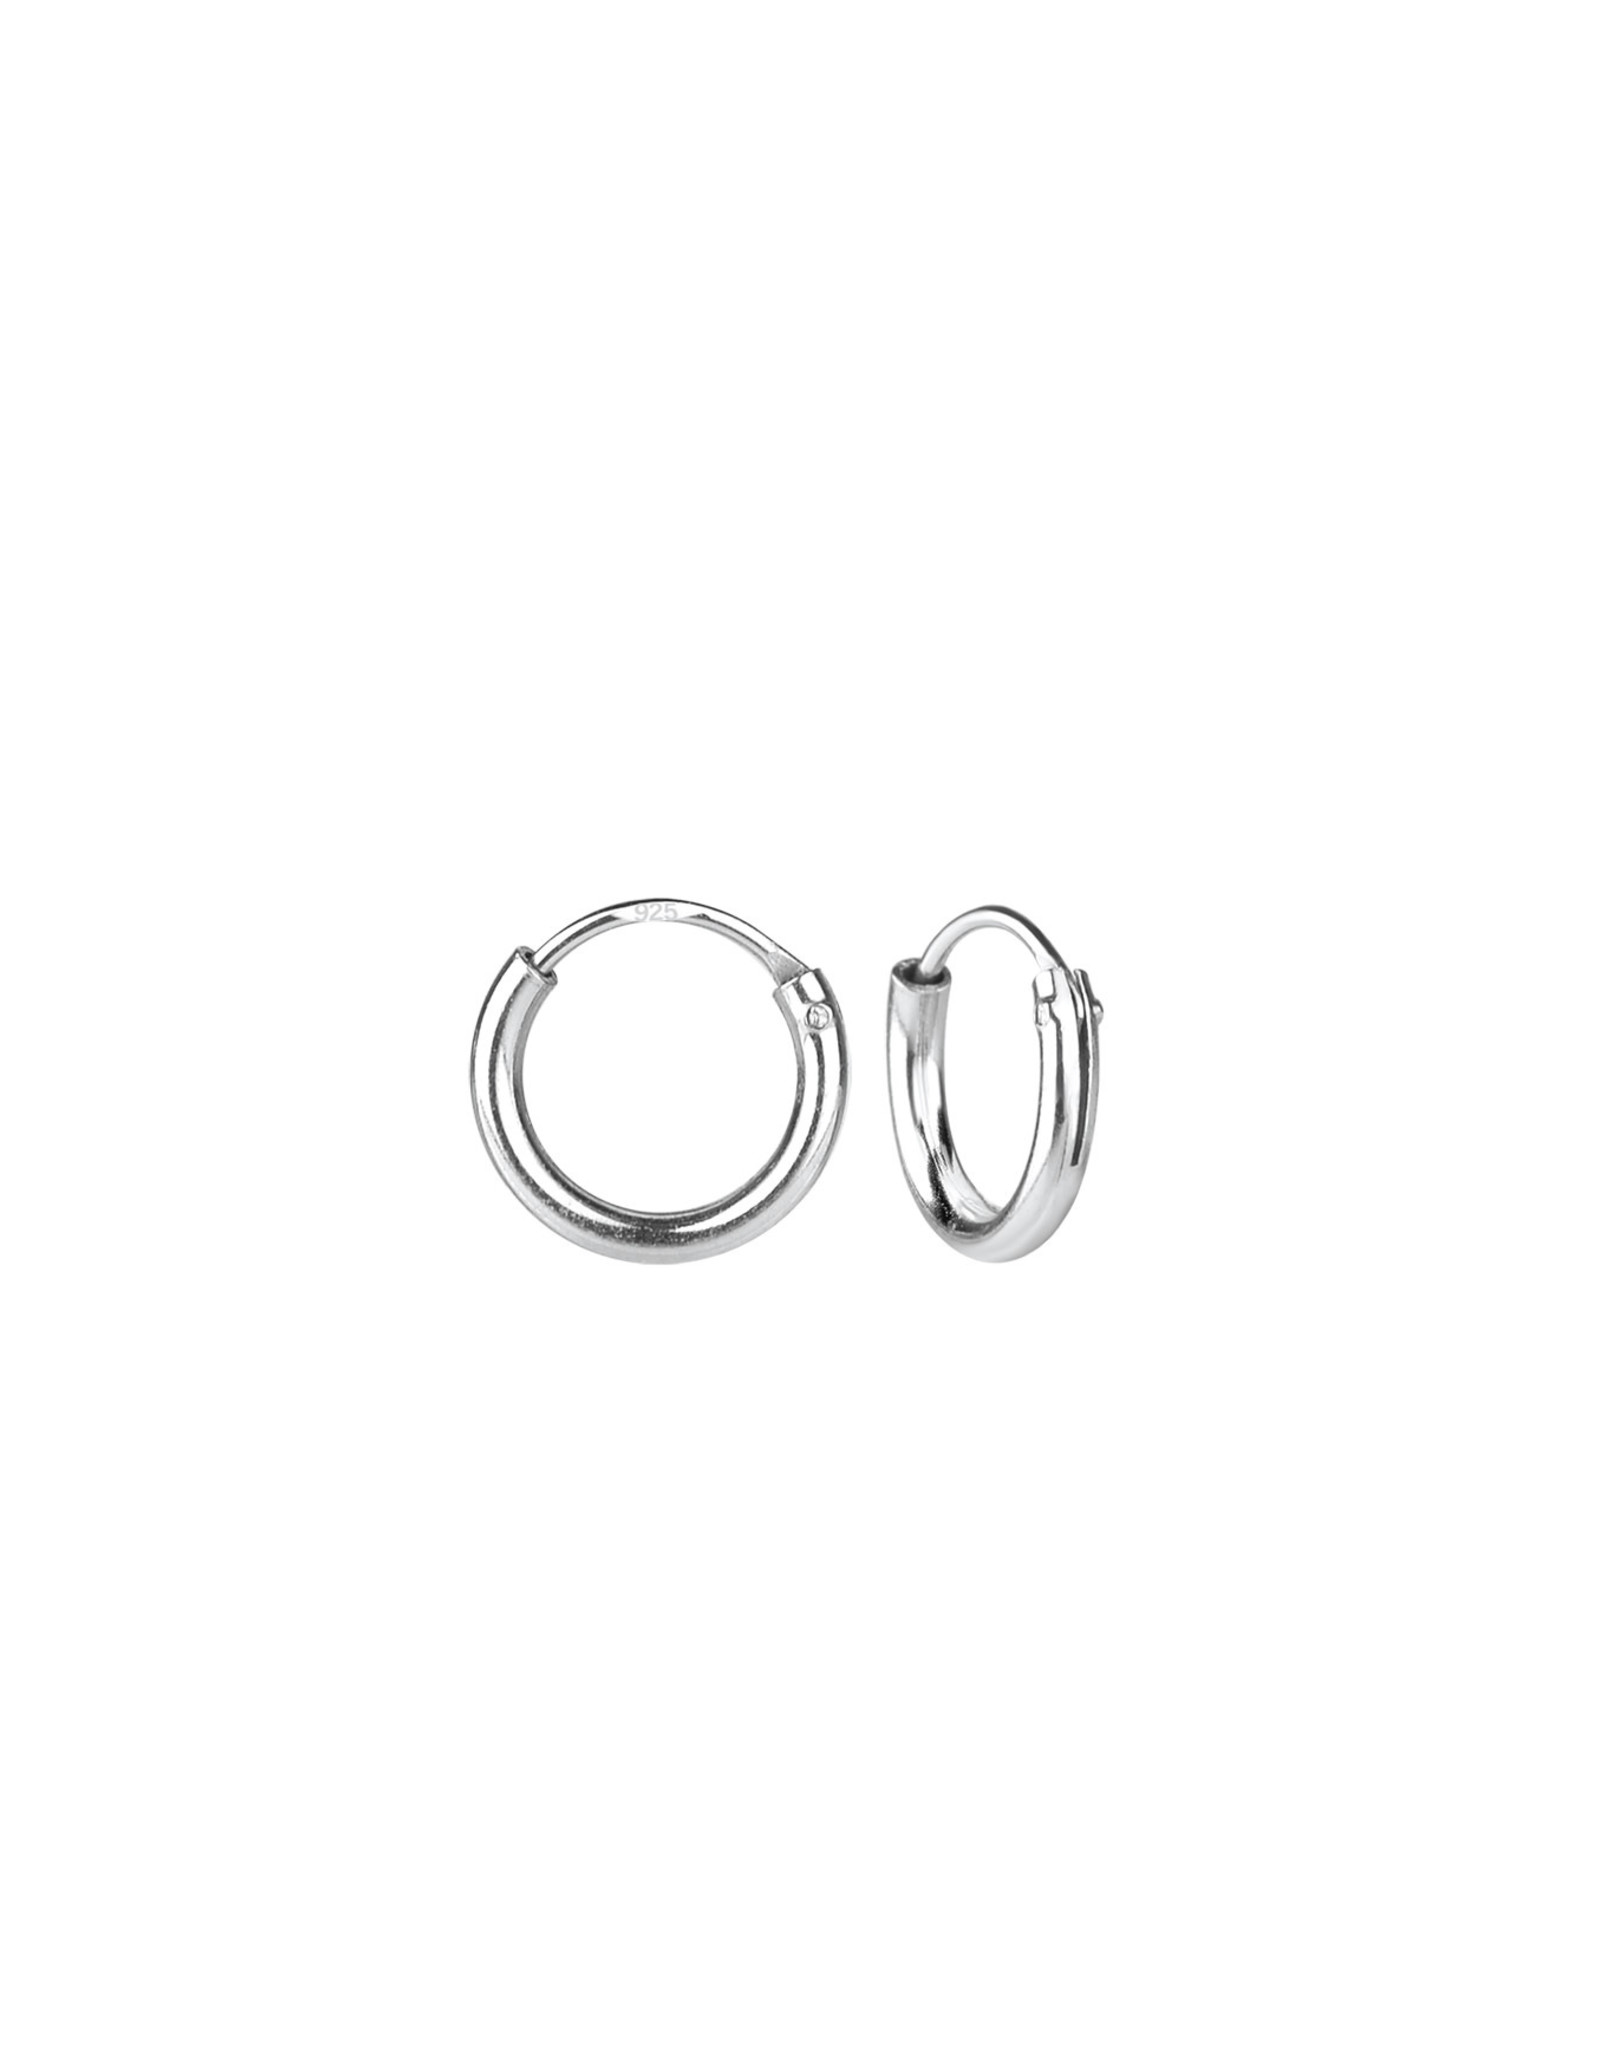 7mm Silver Hoop Earrings + E-Coat (Anti-Tarnish)